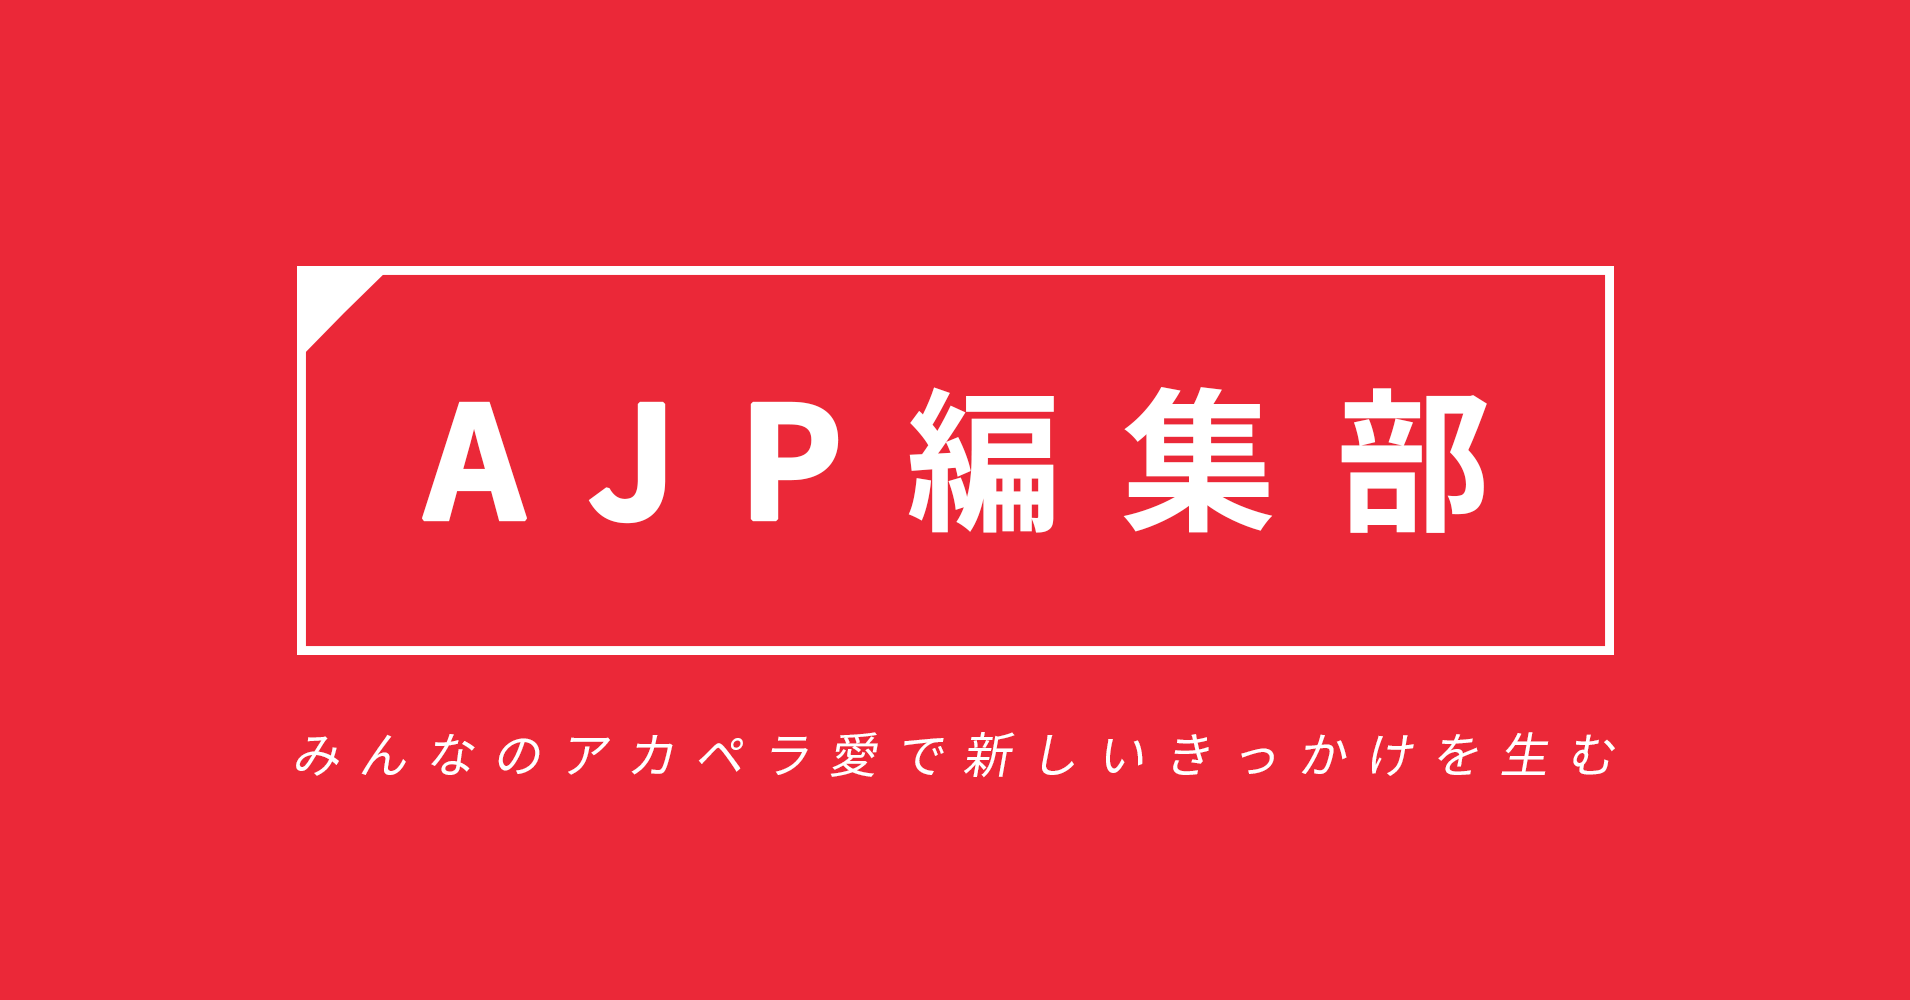 【お知らせ】アカペラ総合メディア「ハモニポン」の記事を「AJP編集部」で公開いたします。